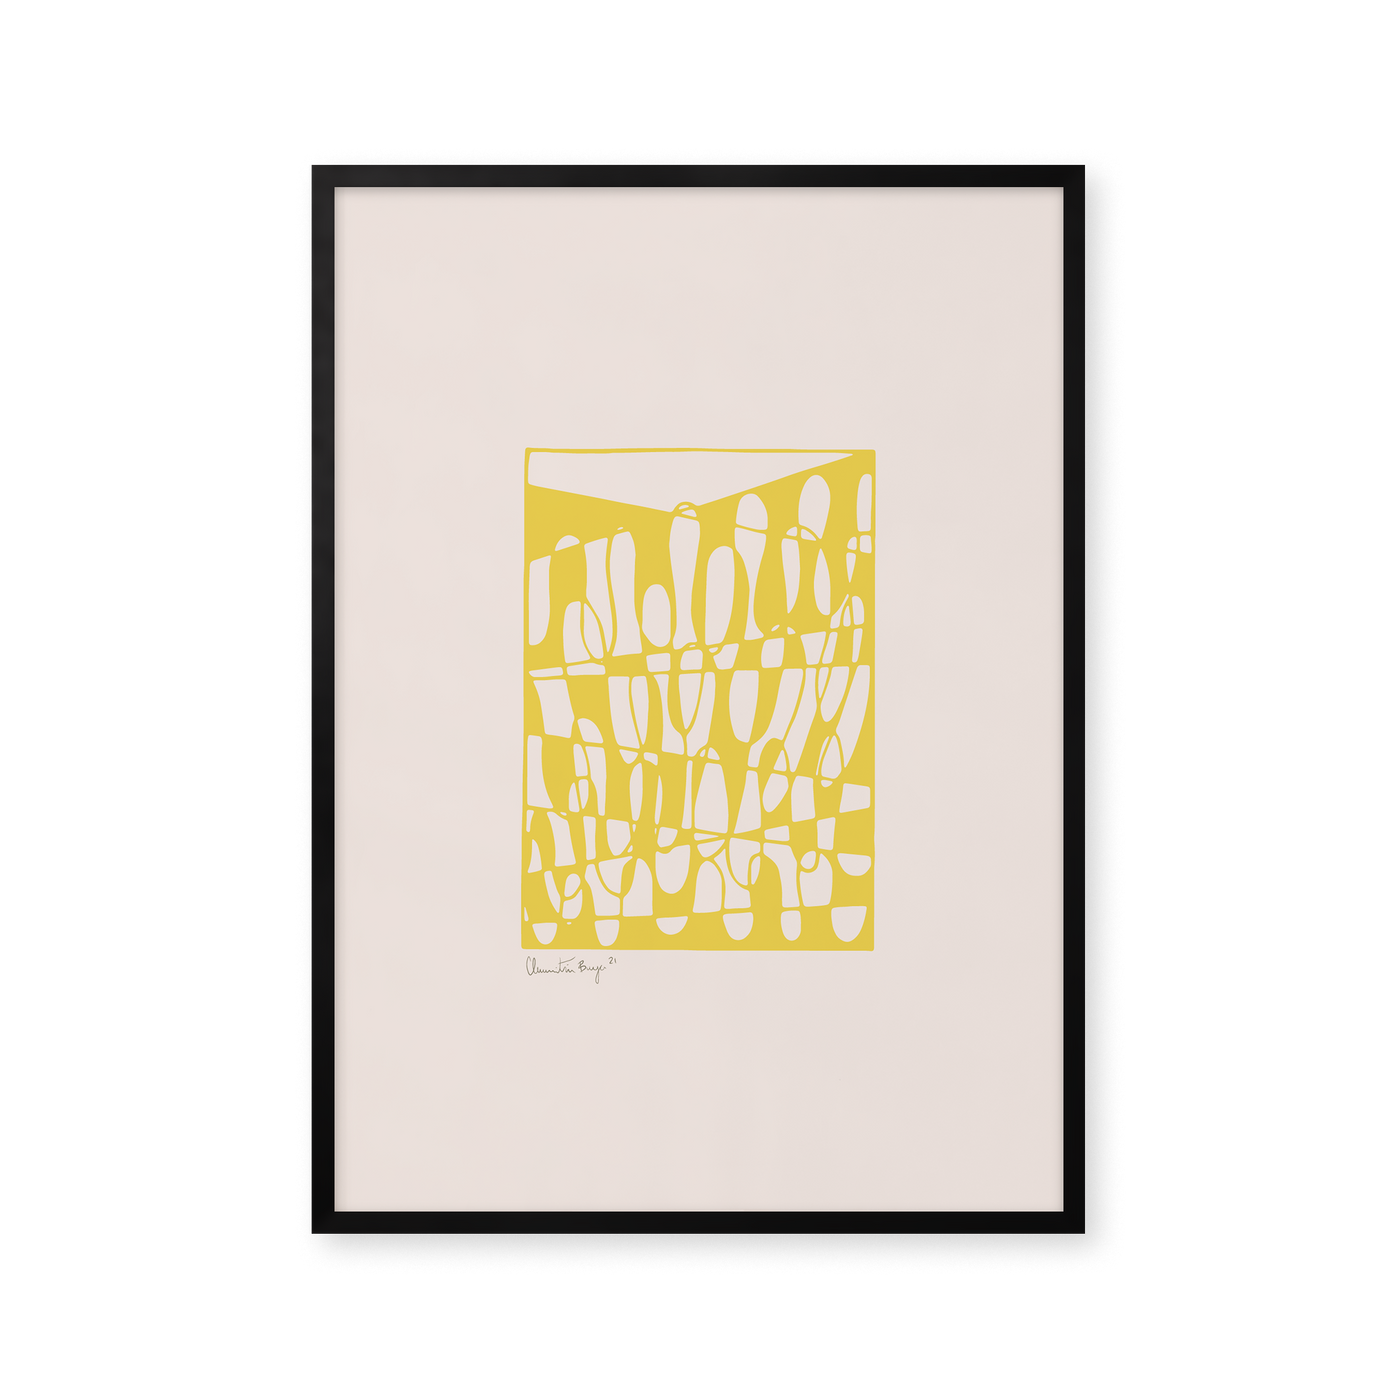 Papercut 01 - Yellow